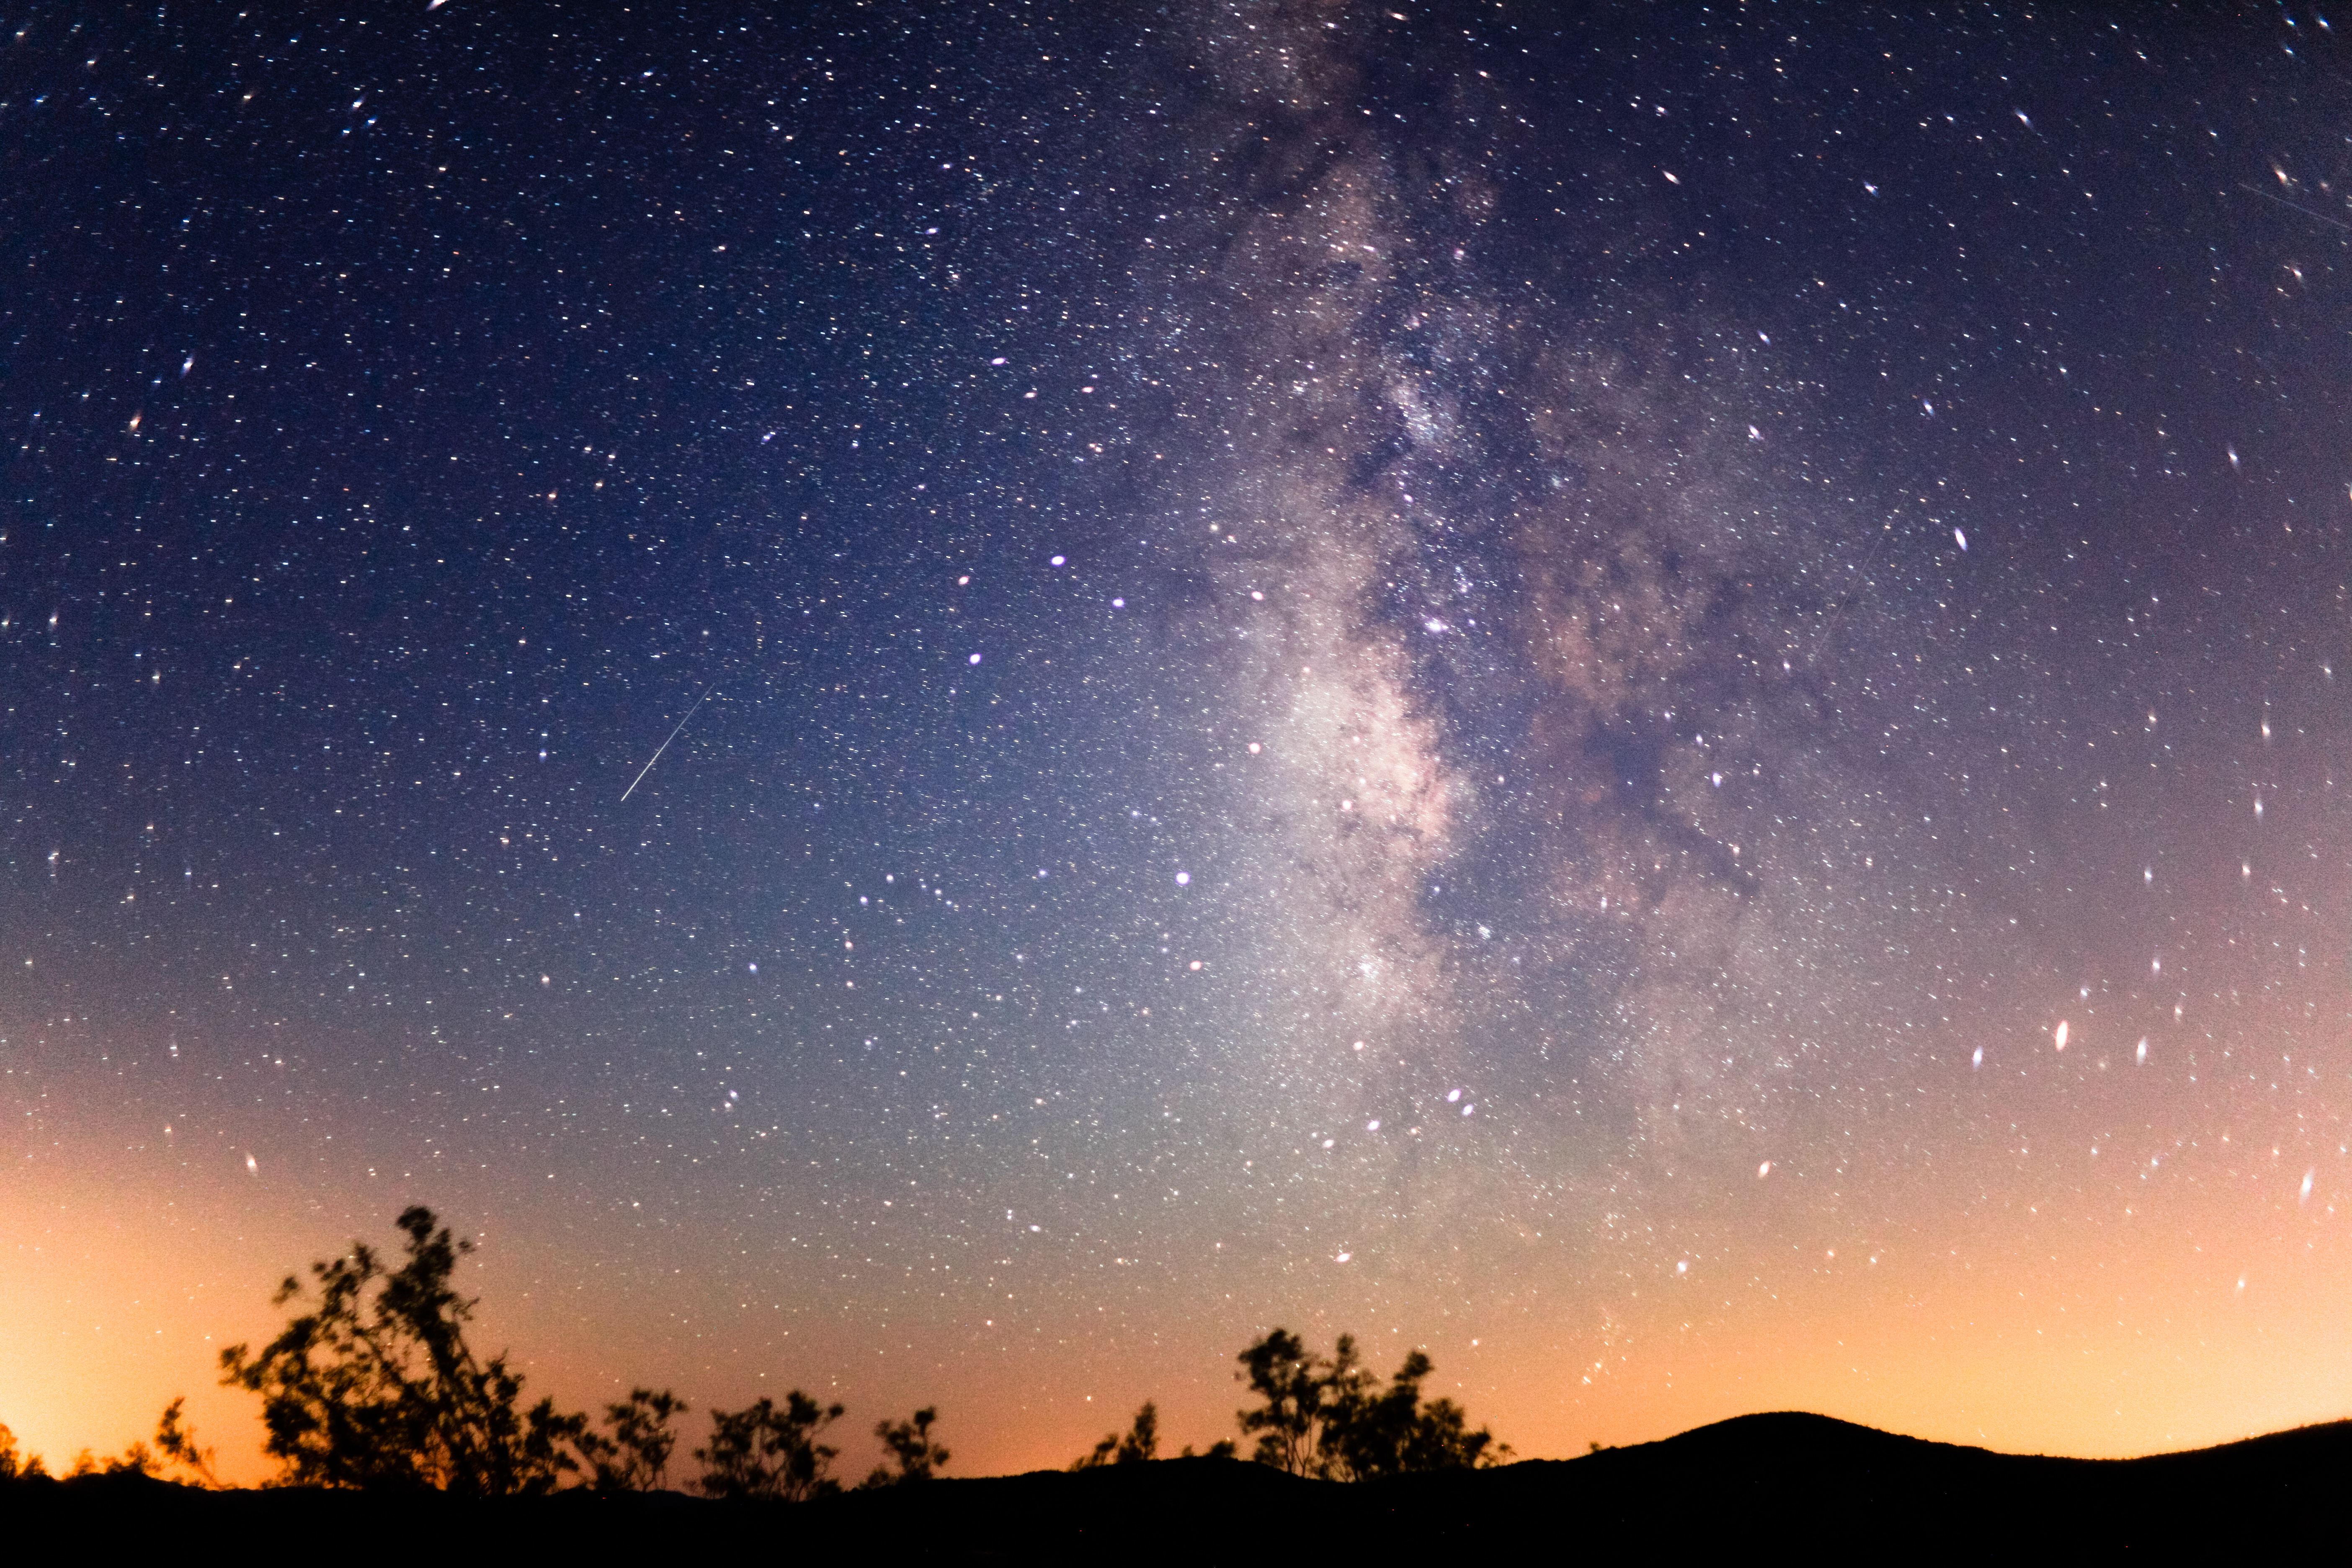 無料写真素材 自然風景 空 夜空 天の川 銀河系 星 流星画像素材なら 無料 フリー写真素材のフリーフォト